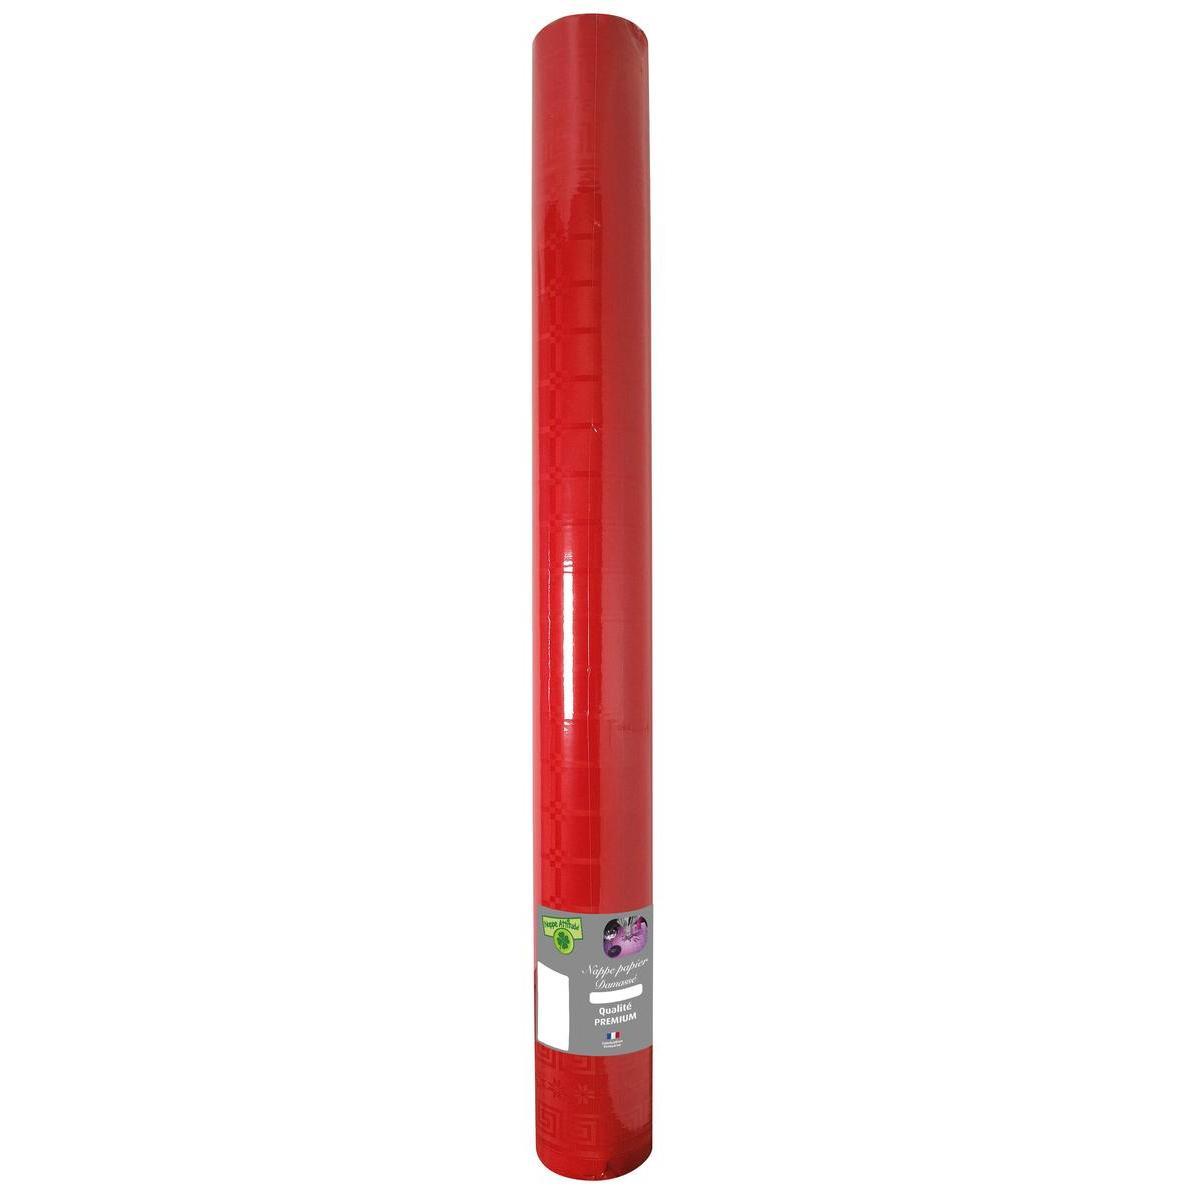 Nappe effet damassé - Papier - 20 m x 120 cm - Rouge